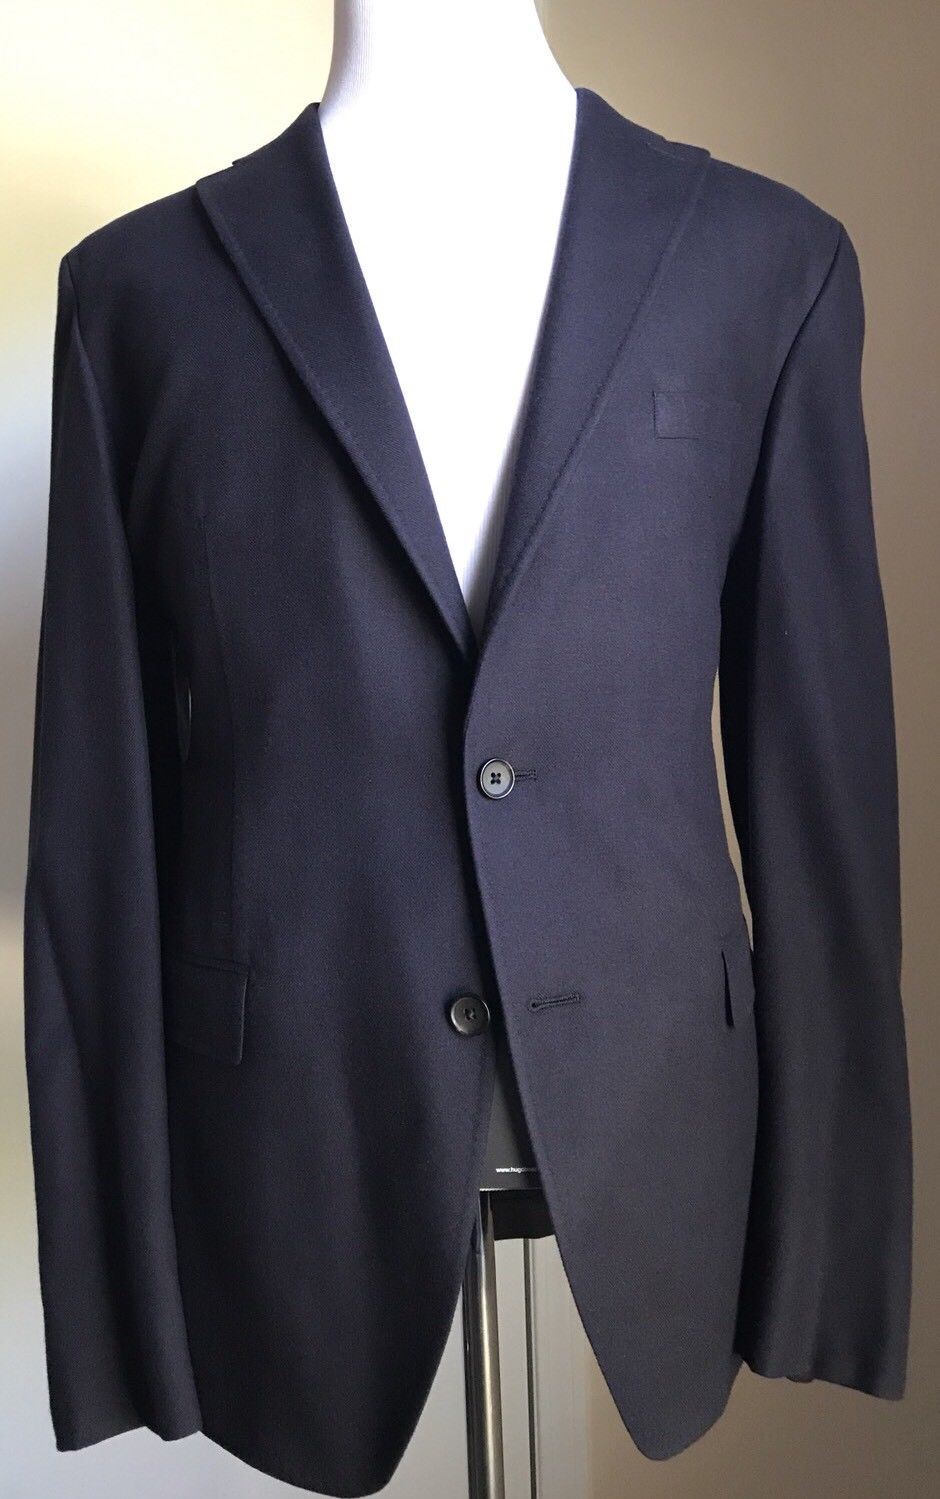 NWT $1395 Boss Hugo Boss T-Hawn Silk Sport Coat Jacket Blue 40R US (50R Eu)